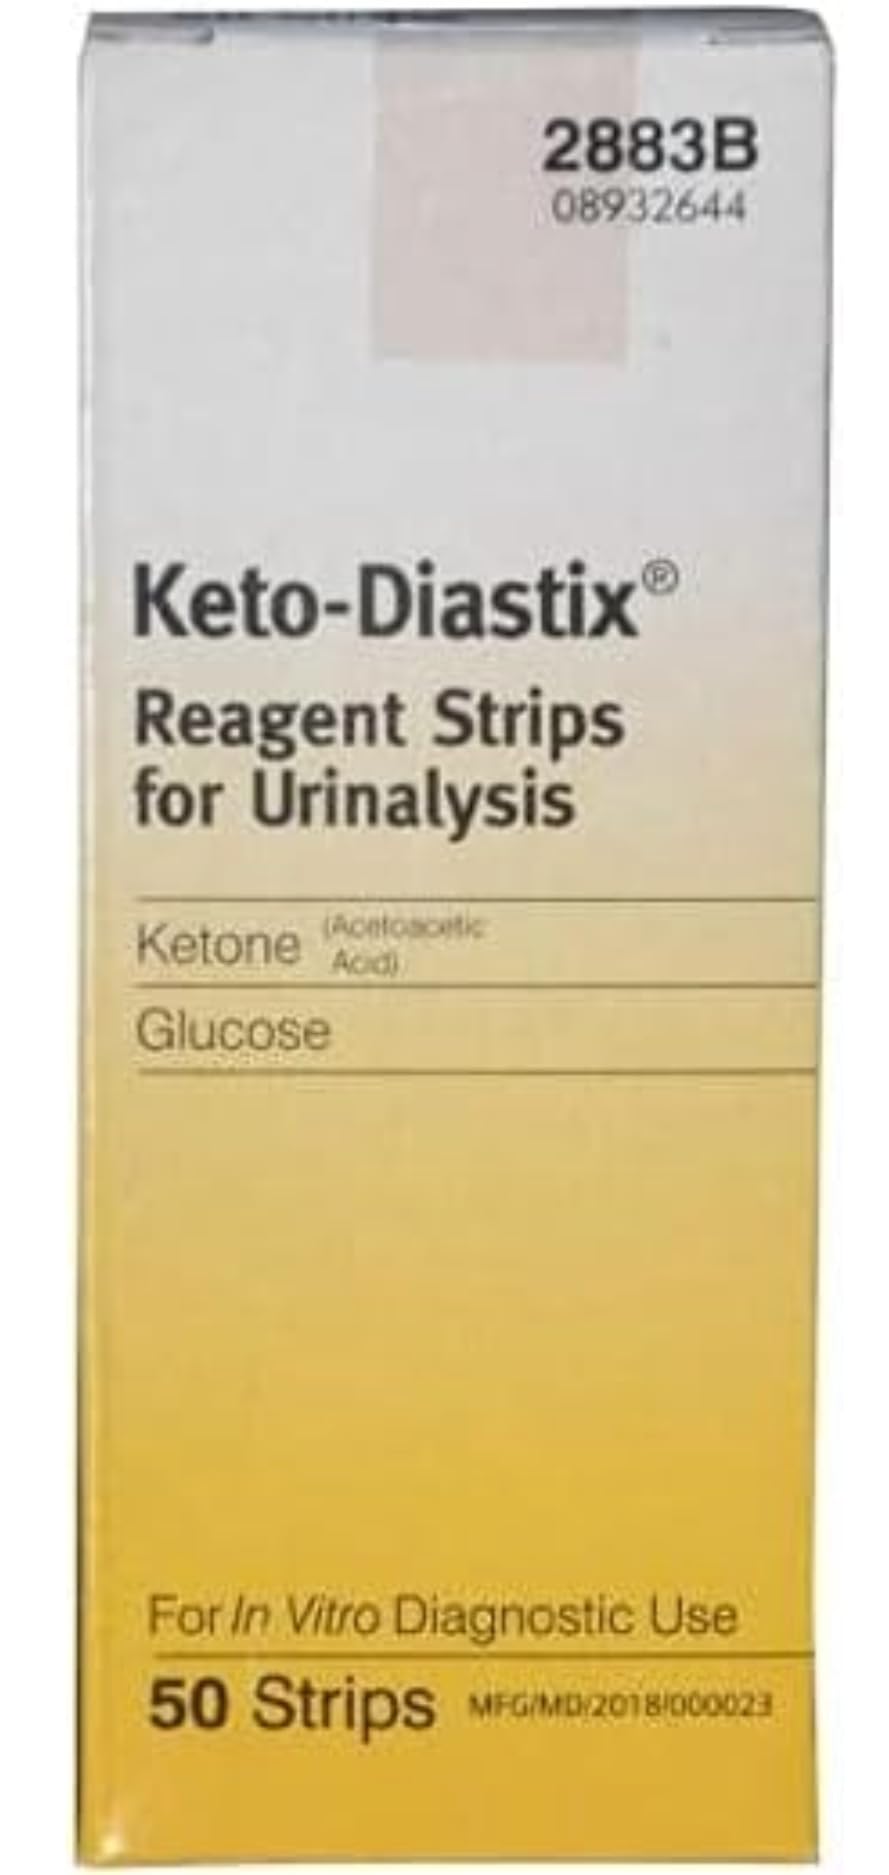 Keto-Diastix 50 Reagent Strips for Urinalysis